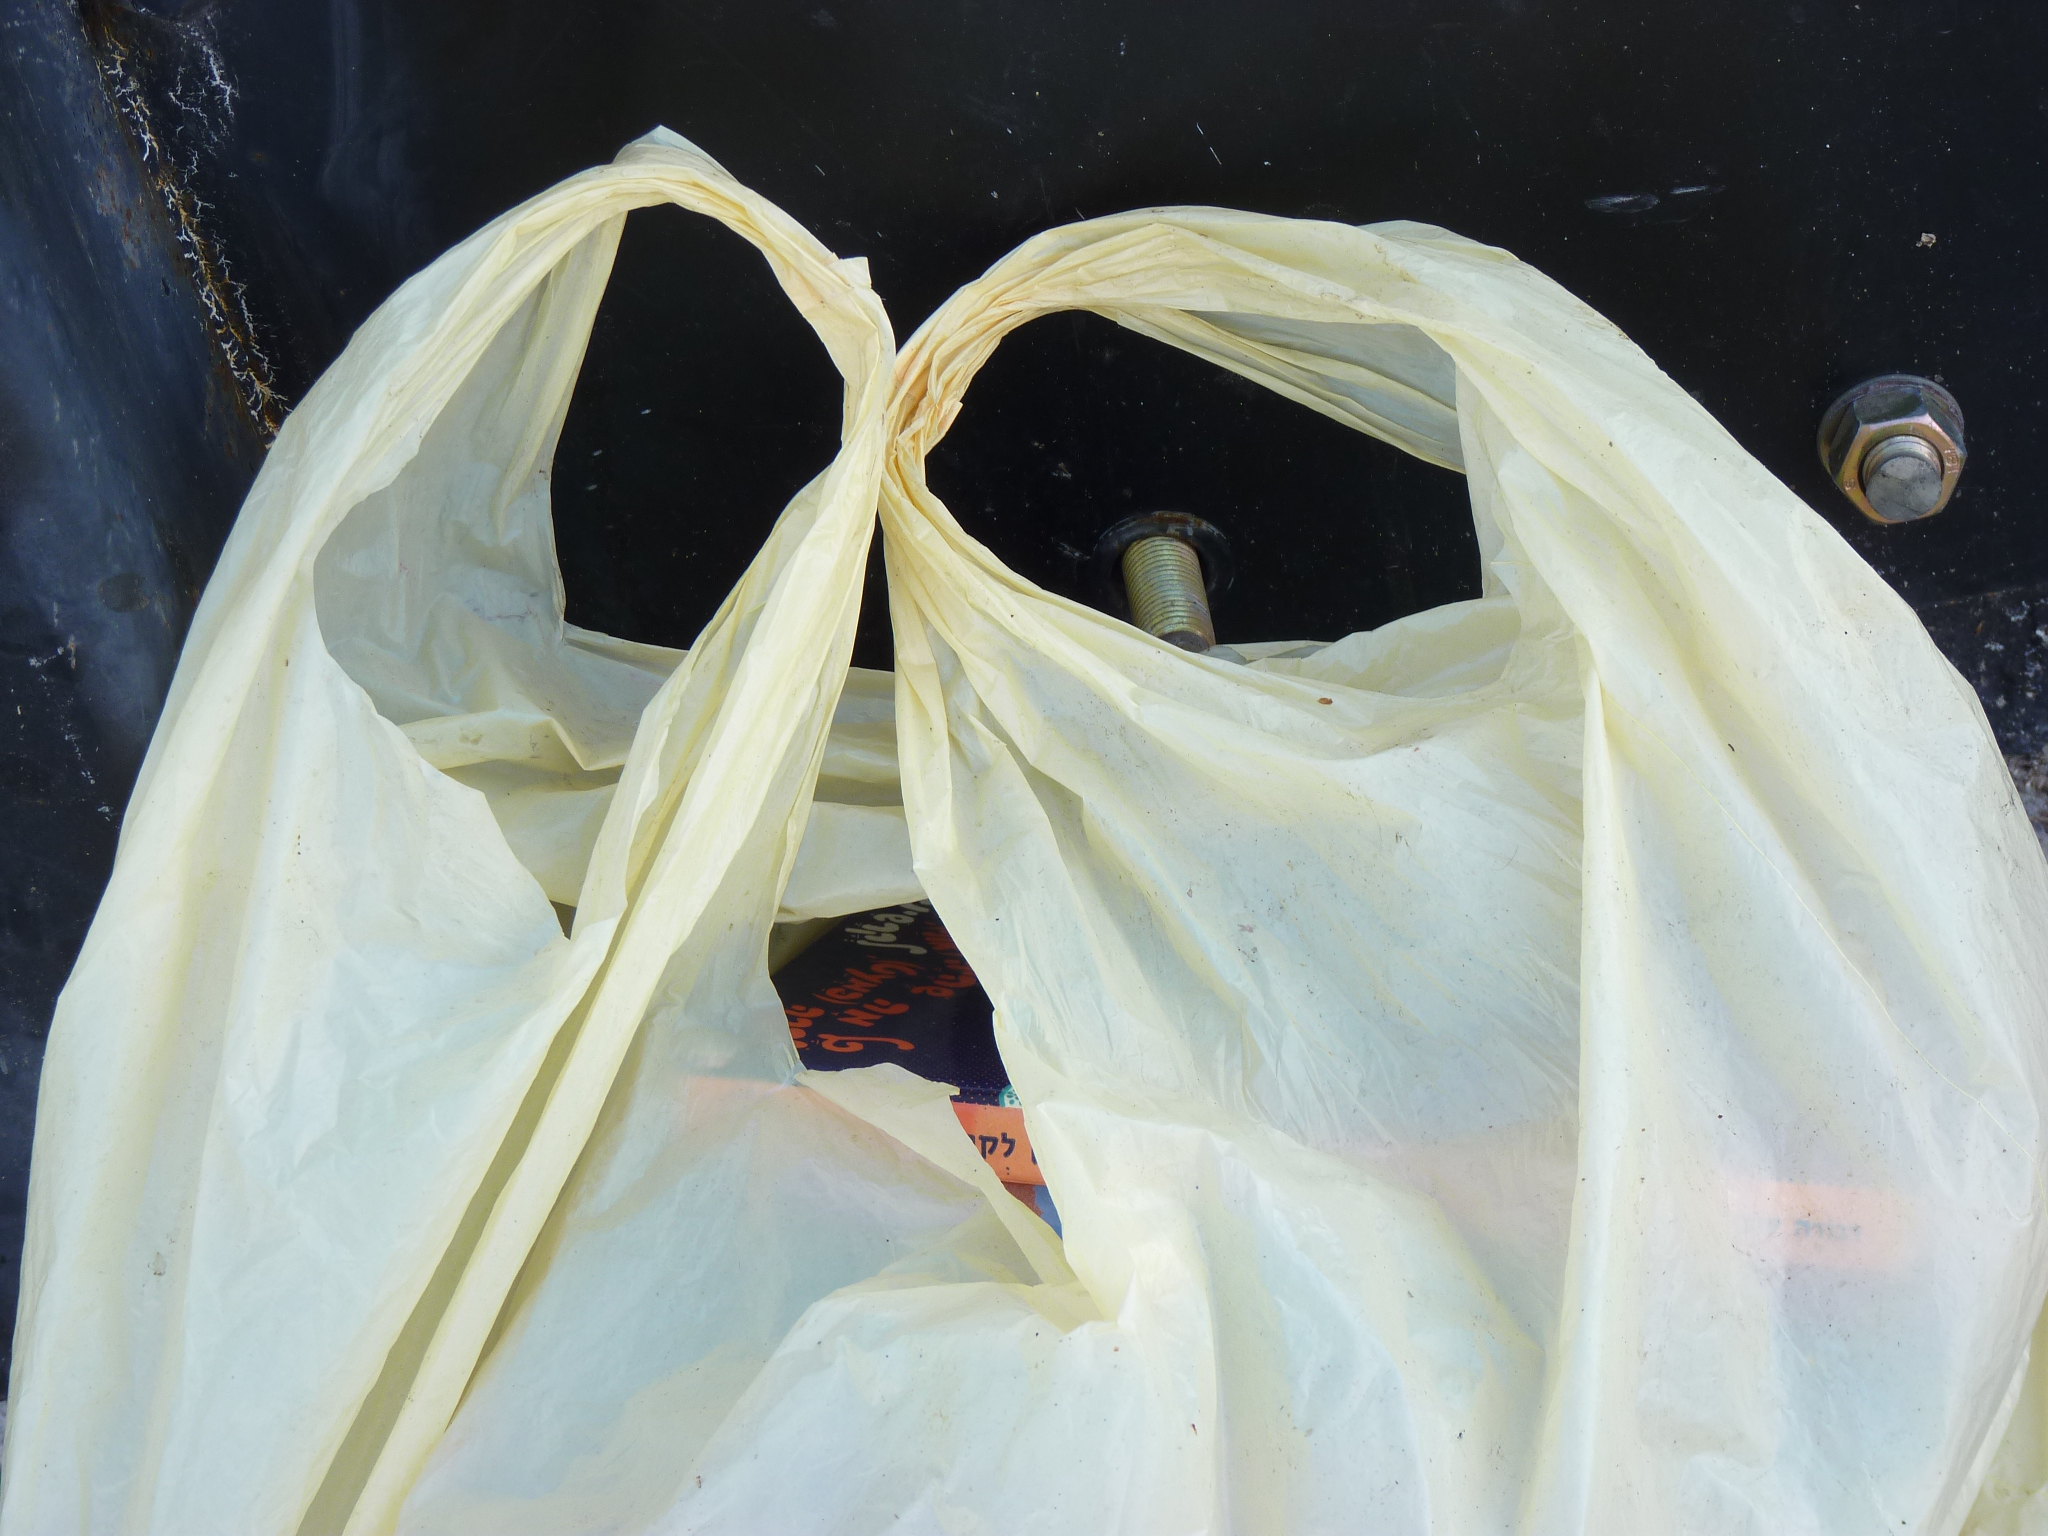 Plastic bag. (Credit: zeevveez/ Flickr)